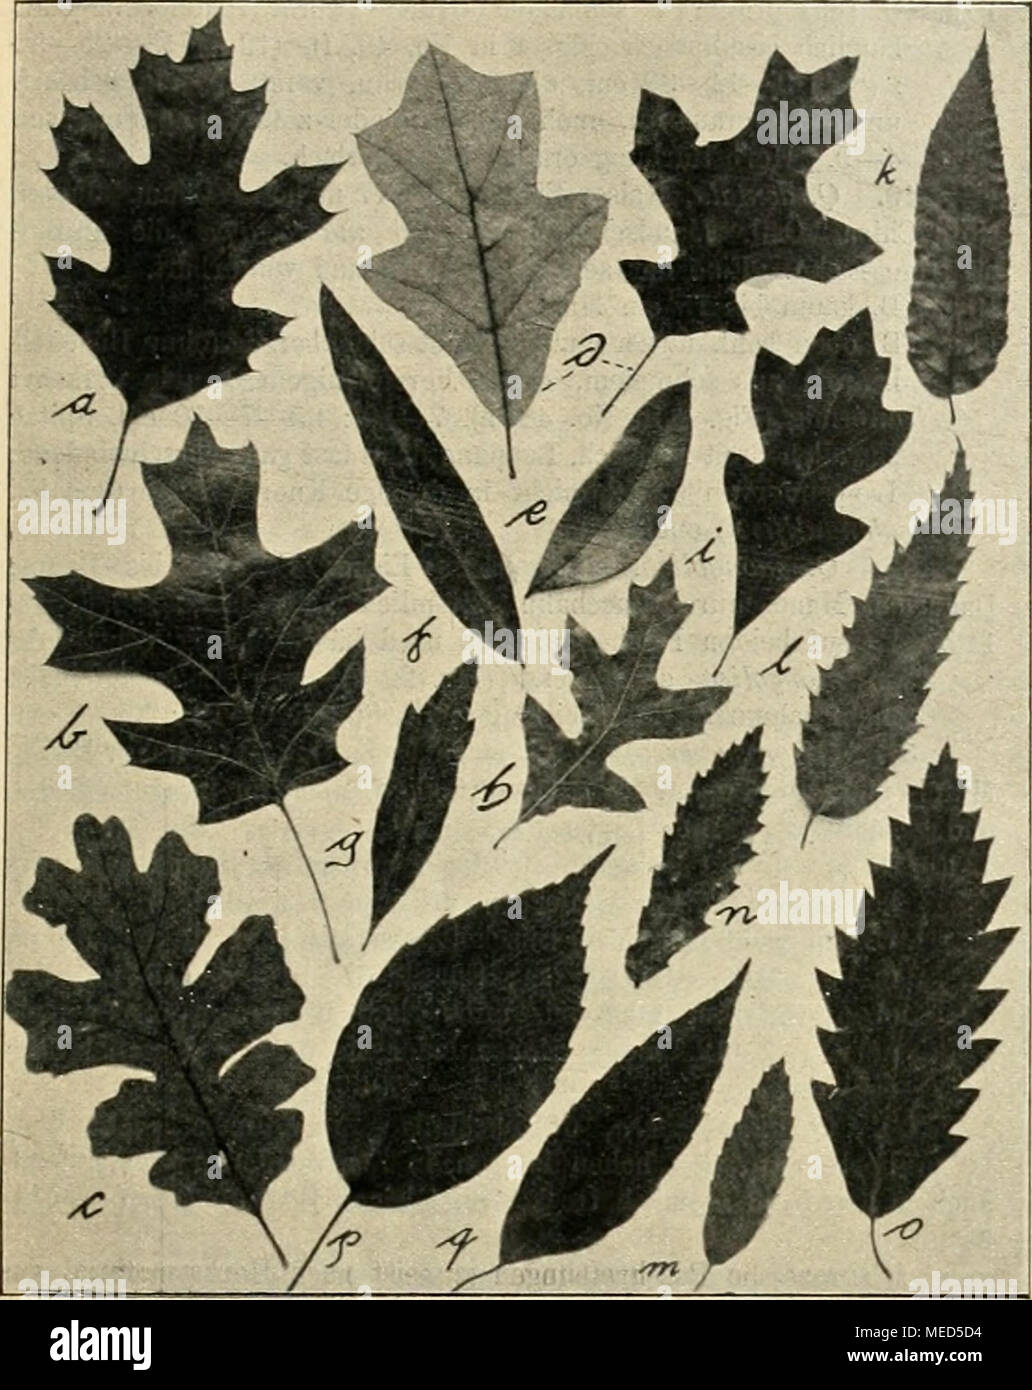 . Die Gartenwelt . Vg. 1. a. Quercus Kcllogii (Q. eaKfornica). — b. Q. texana. — c. Q. lobata. — d. Q. ilicifolia (Q. nana):— e—g. Q. Phellos. — h — i. Q, gcorgi- ana. — k. Q. serrata. — 1—ra. Q. libani. — n. Q. macedoniea. — o. Q. castaneaefolia. — p—q. Q. glauea. (Alles B/14 nat. Grösse.) Buchtnerven. Wenn es heisst Lappennerven 10—12, so sind natürlich Nervenpaare gemeint, der Kürze halber hebe ich das nicht immer hervor. Ausser dem Umriss, der Stiellange und der Färbung ist die Art der Behaarung von hoher Bedeutung. Wir unterscheiden bei Quercus be- sonders zwei Haartypen, einfache (seidi Stock Photo